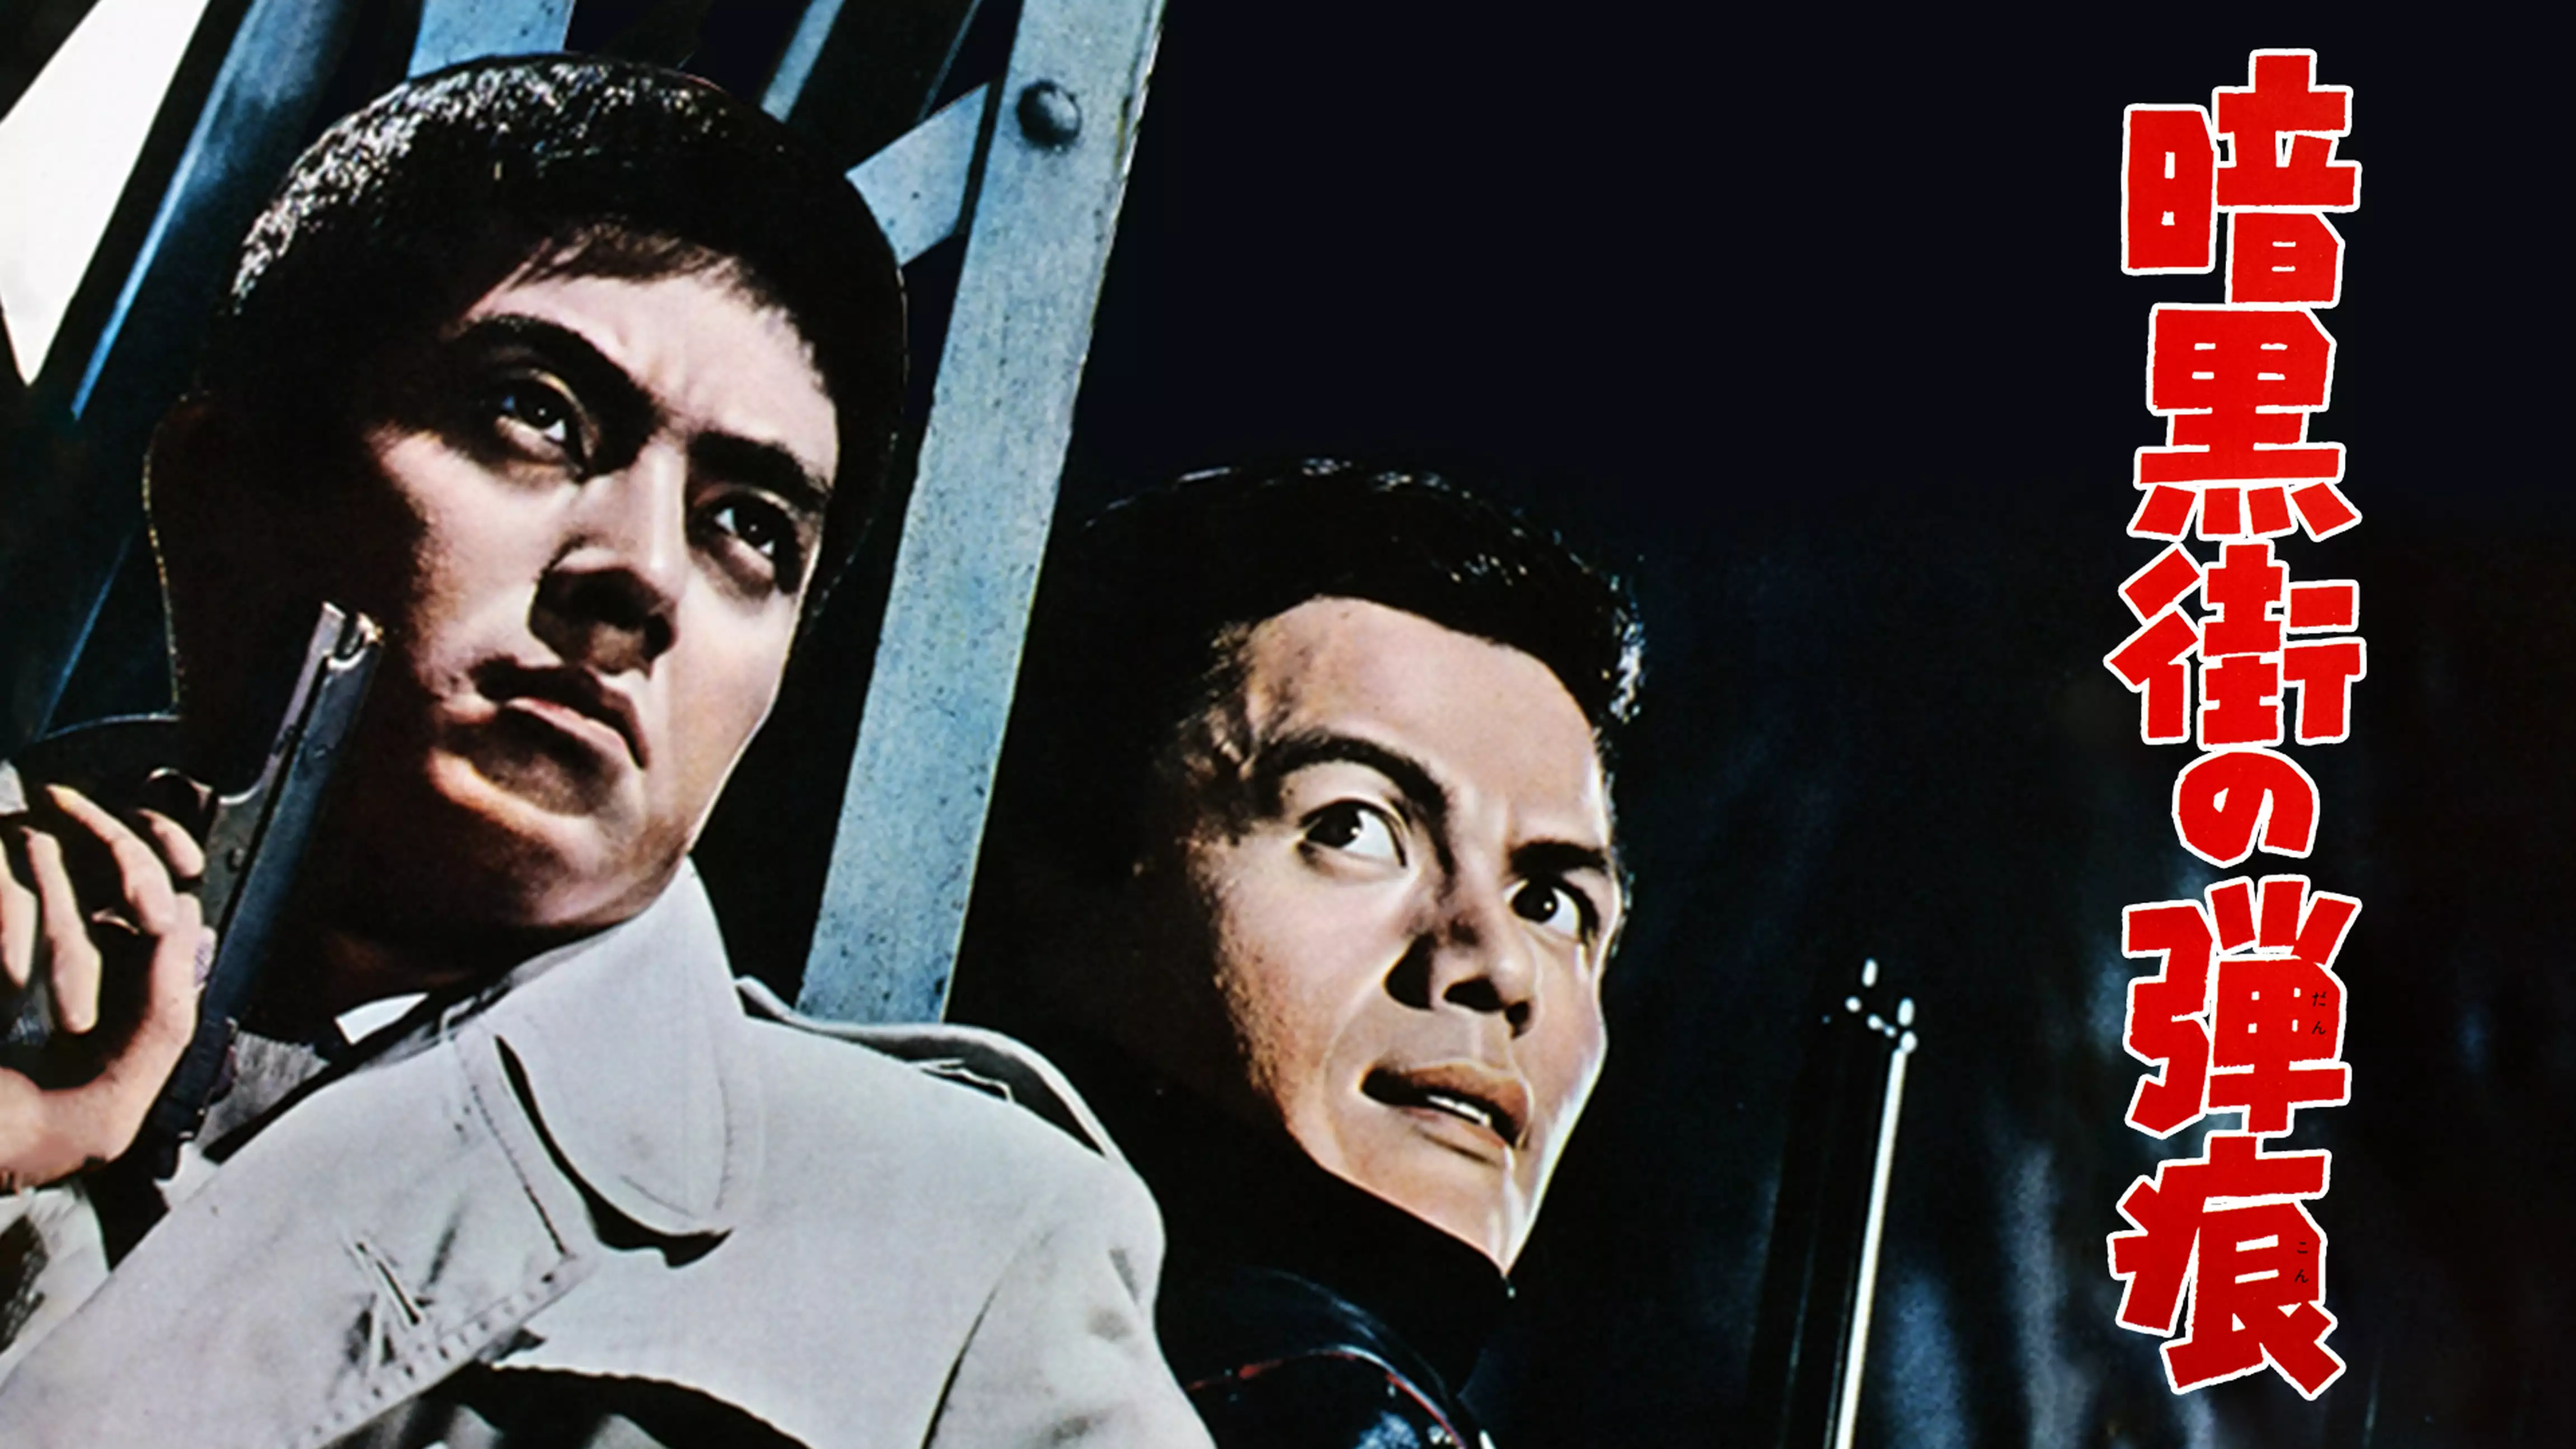 暗黒街の弾痕(邦画 / 1961) - 動画配信 | U-NEXT 31日間無料トライアル